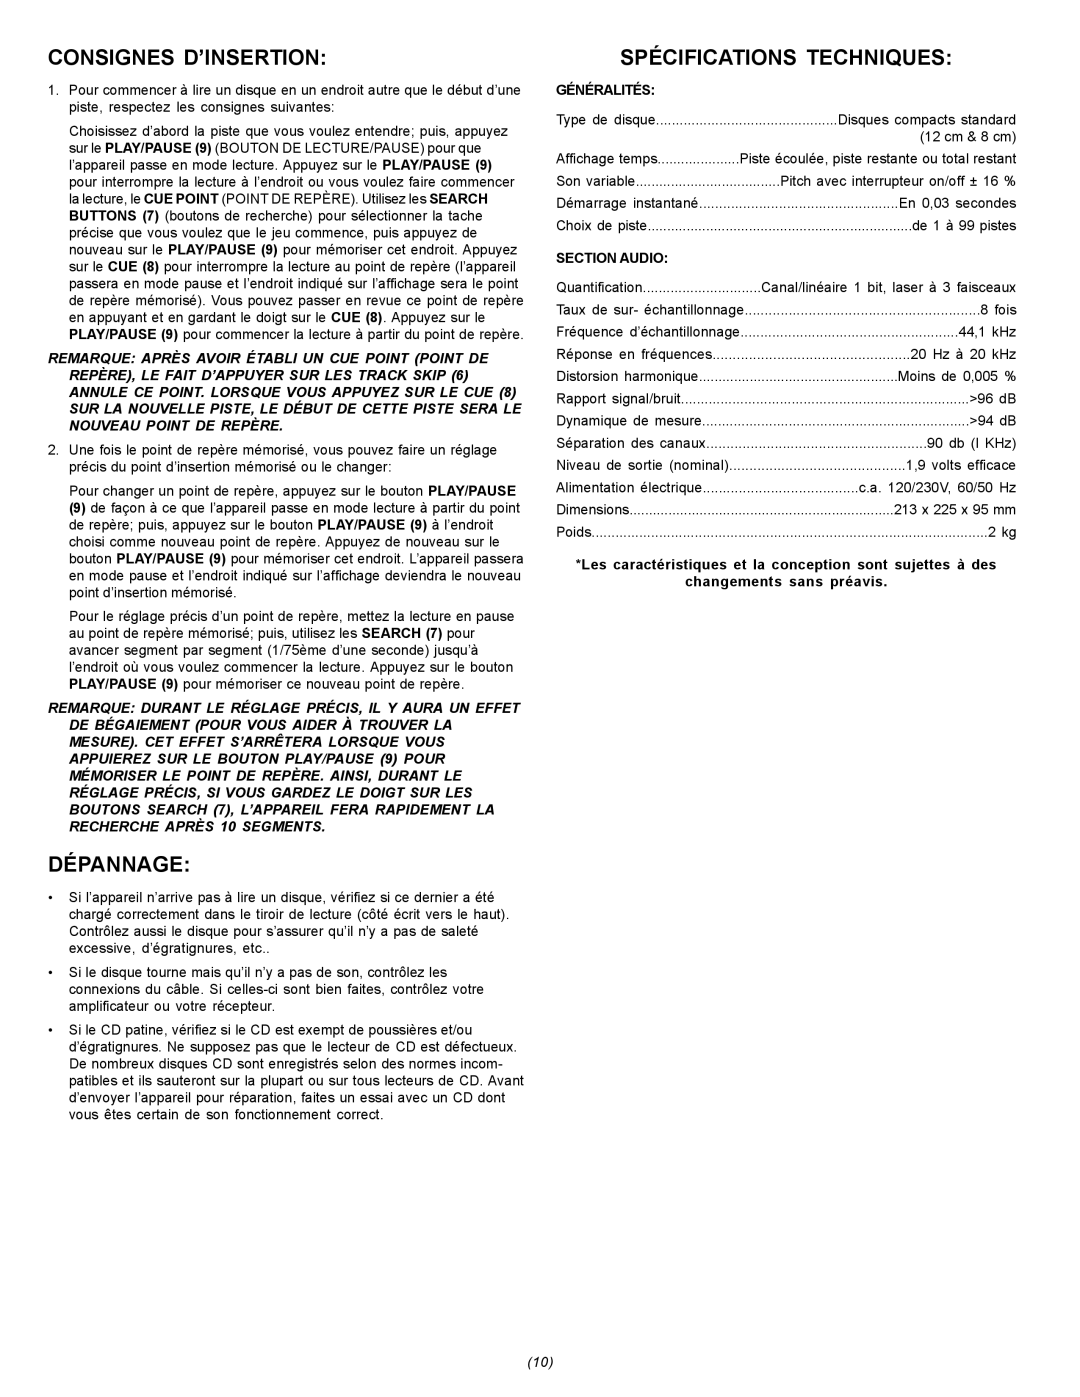 Gemini CDJ-15 manual Consignes D’Insertion, Dépannage, Spécifications Techniques, Généralités, Section Audio 